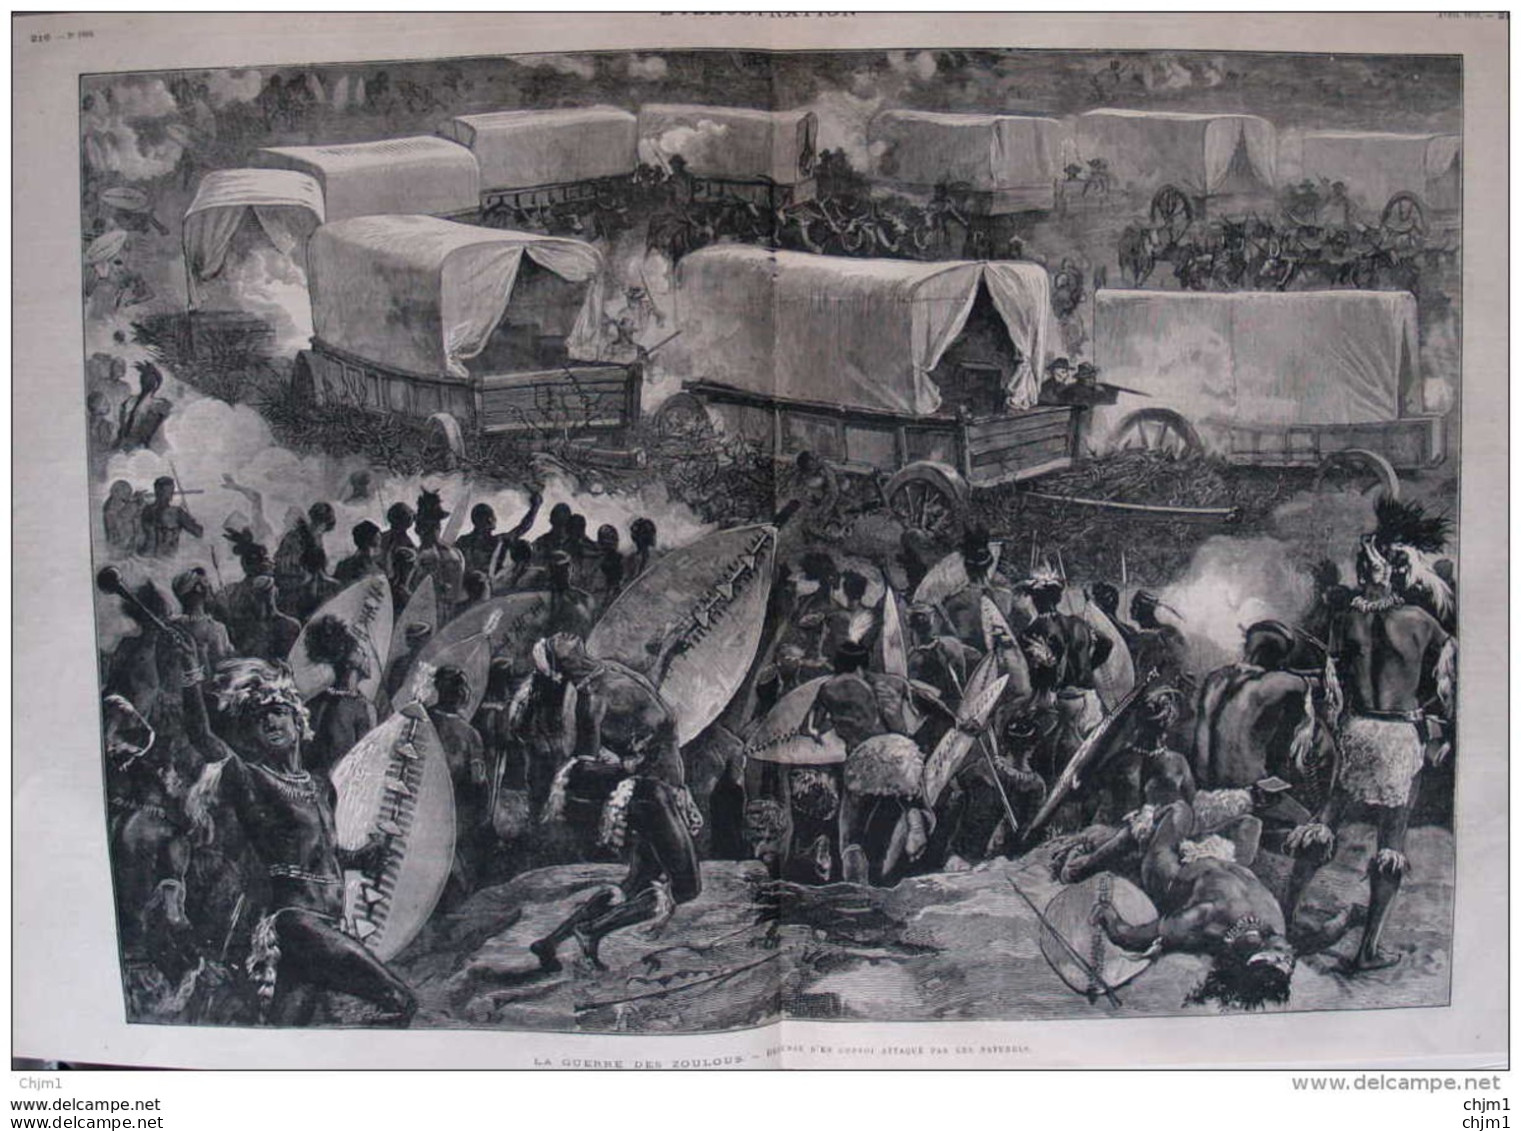 La Guerre Des Zoulous - Défense D'un Convoi Attaqué Par Les Naturels - Page Double Original 1879 - Historische Dokumente